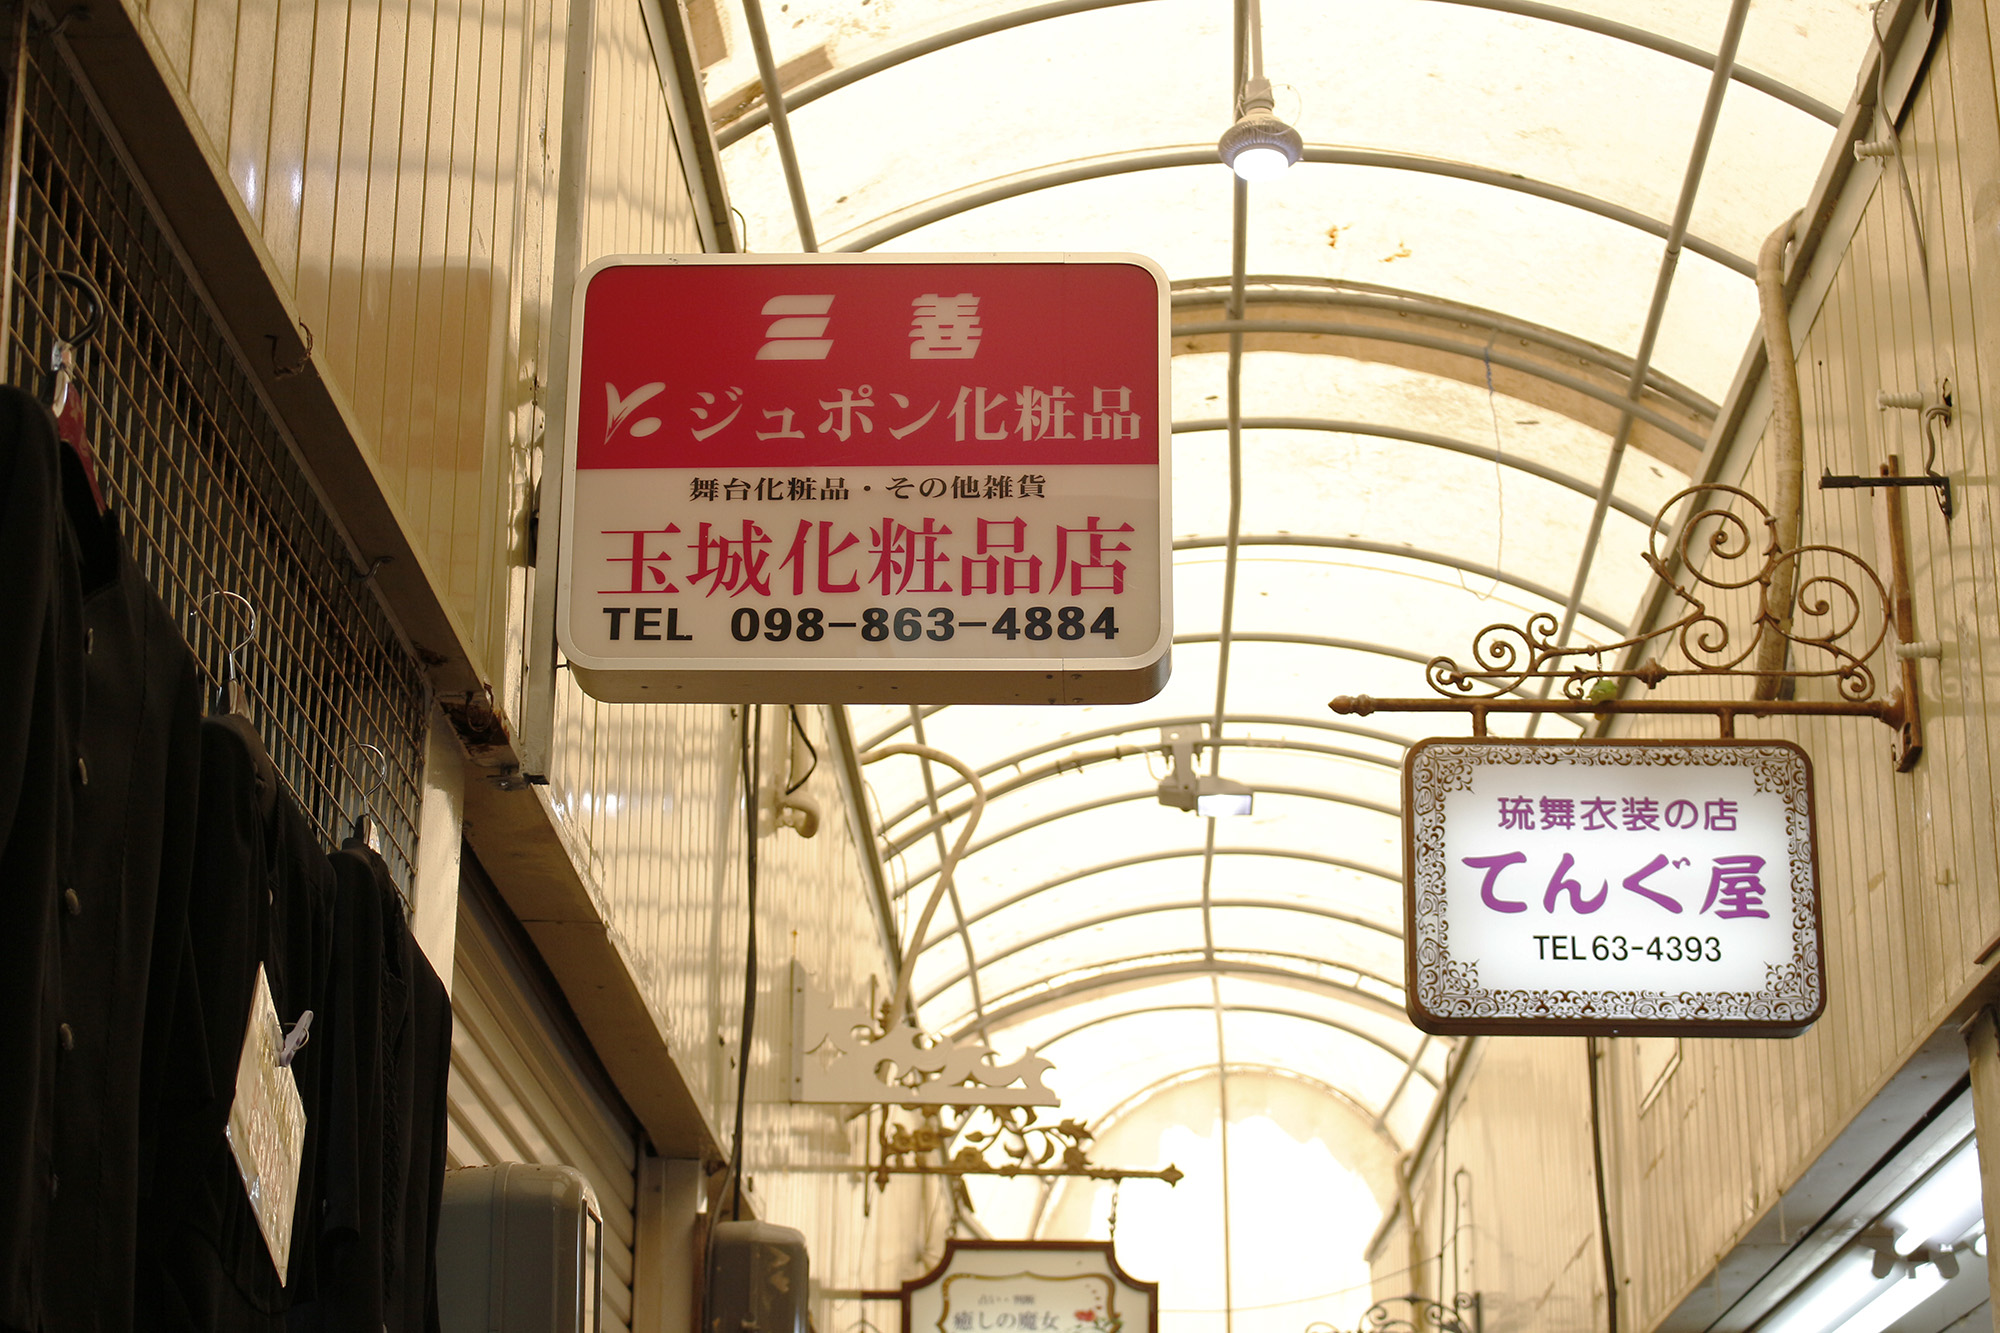 歩いて24歩⁉日本一短い商店街「八軒通り」をまちまーいしてみた。｜発見！まちまーい